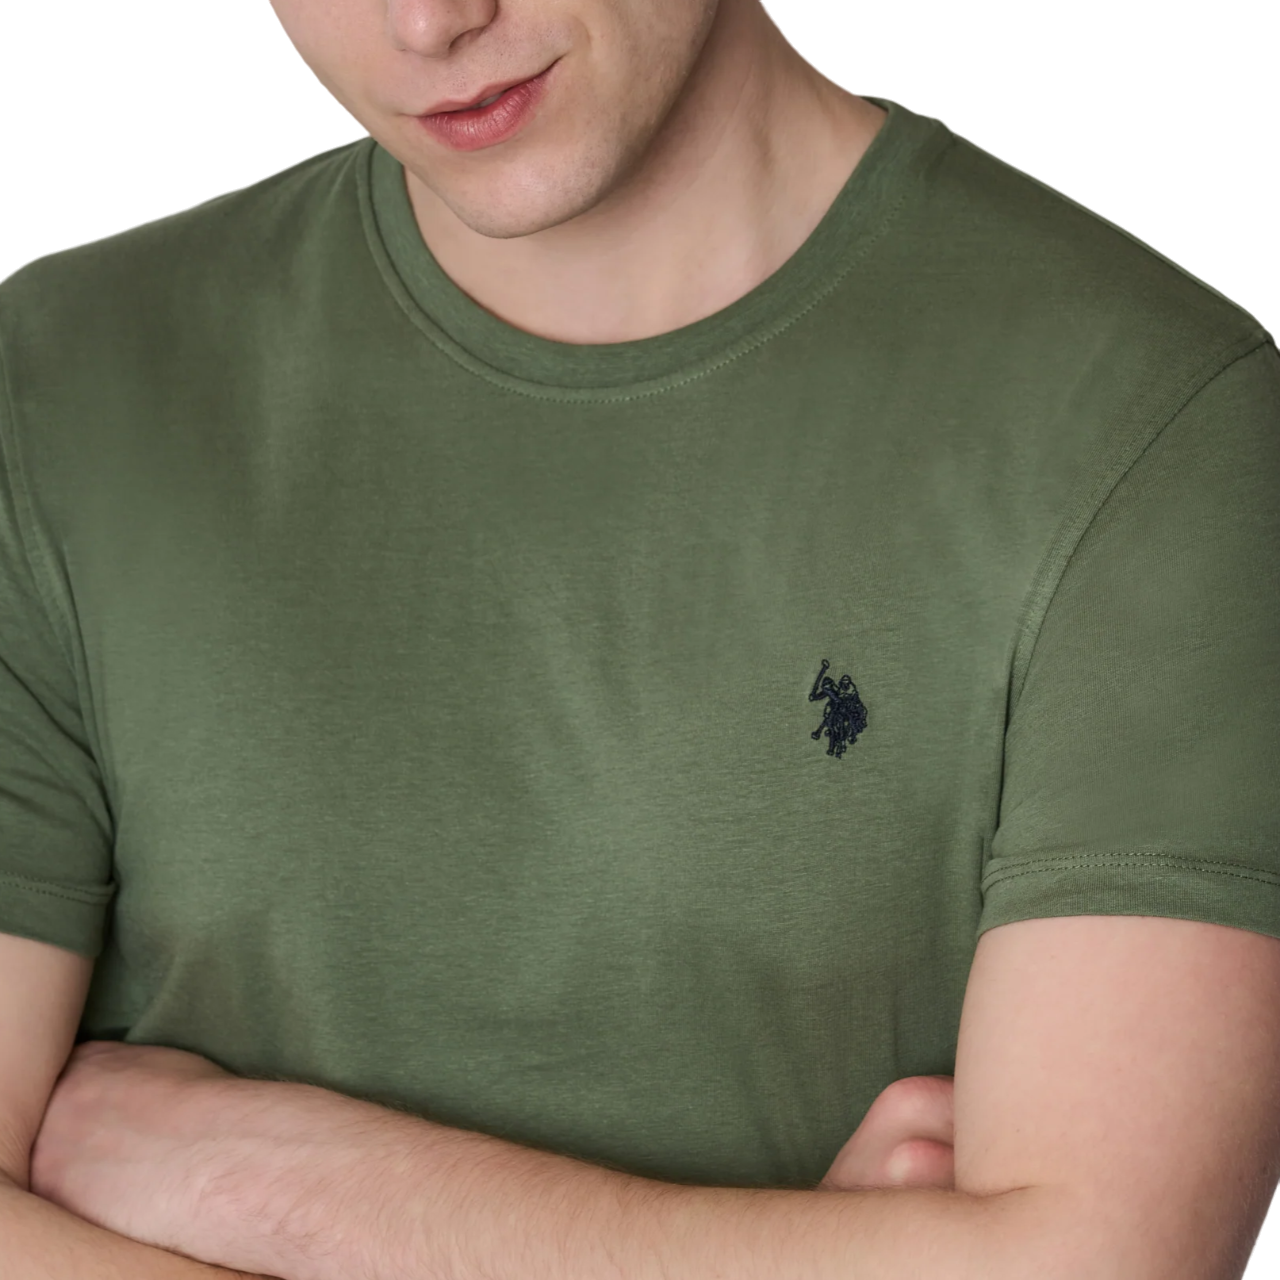 U.S. Polo Assen maglietta manica corta da uomo Mick 49351 EH33 141 verde